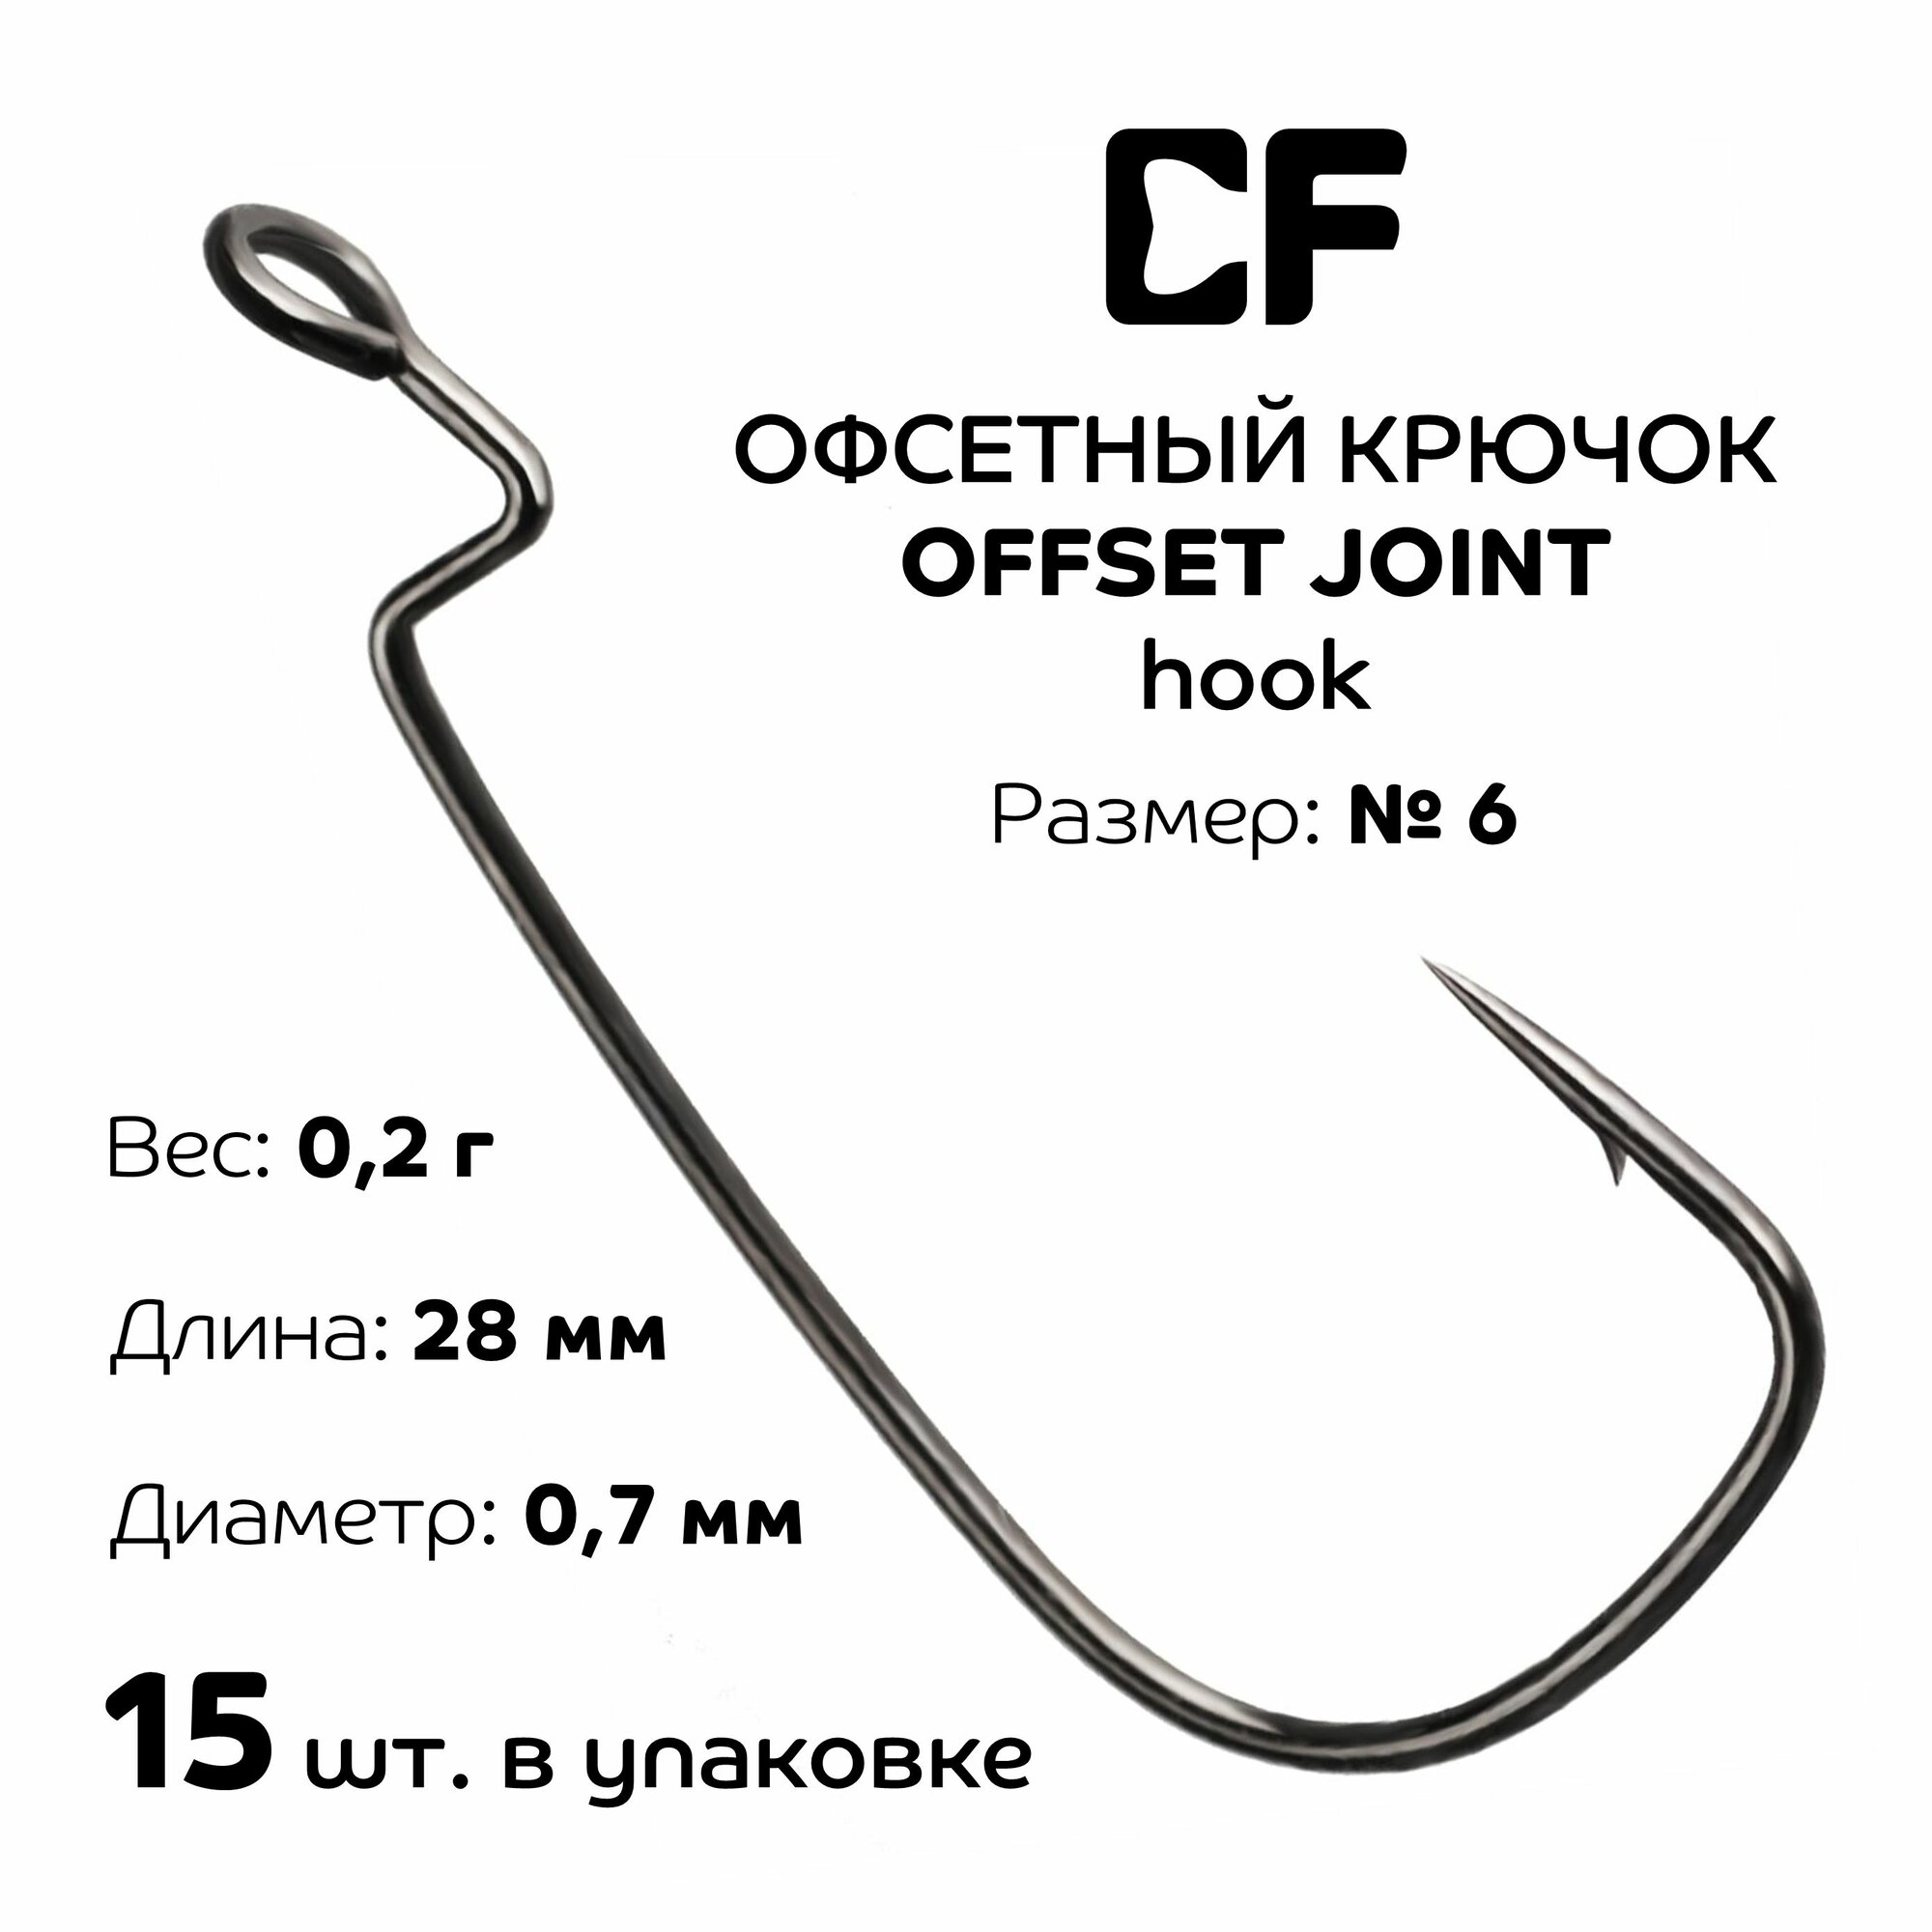 Офсетный крючок CF Offset joint hook №6 15 шт